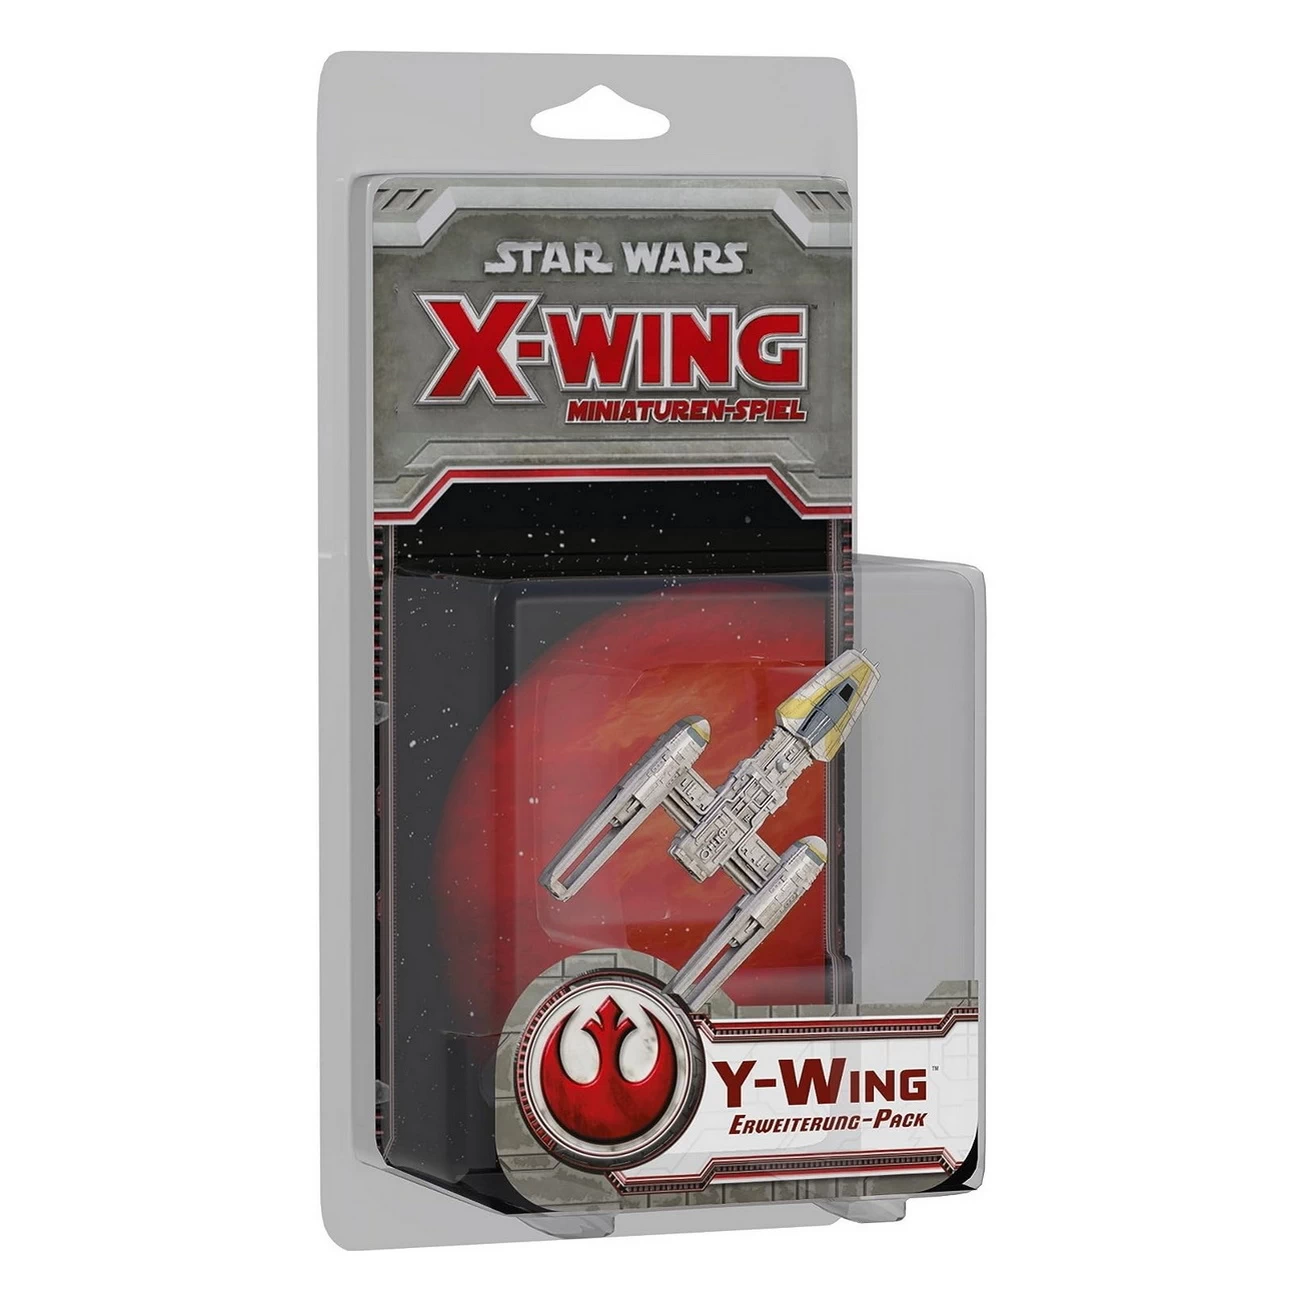 Star Wars X-Wing - Y-Wing Erweiterung-Pack